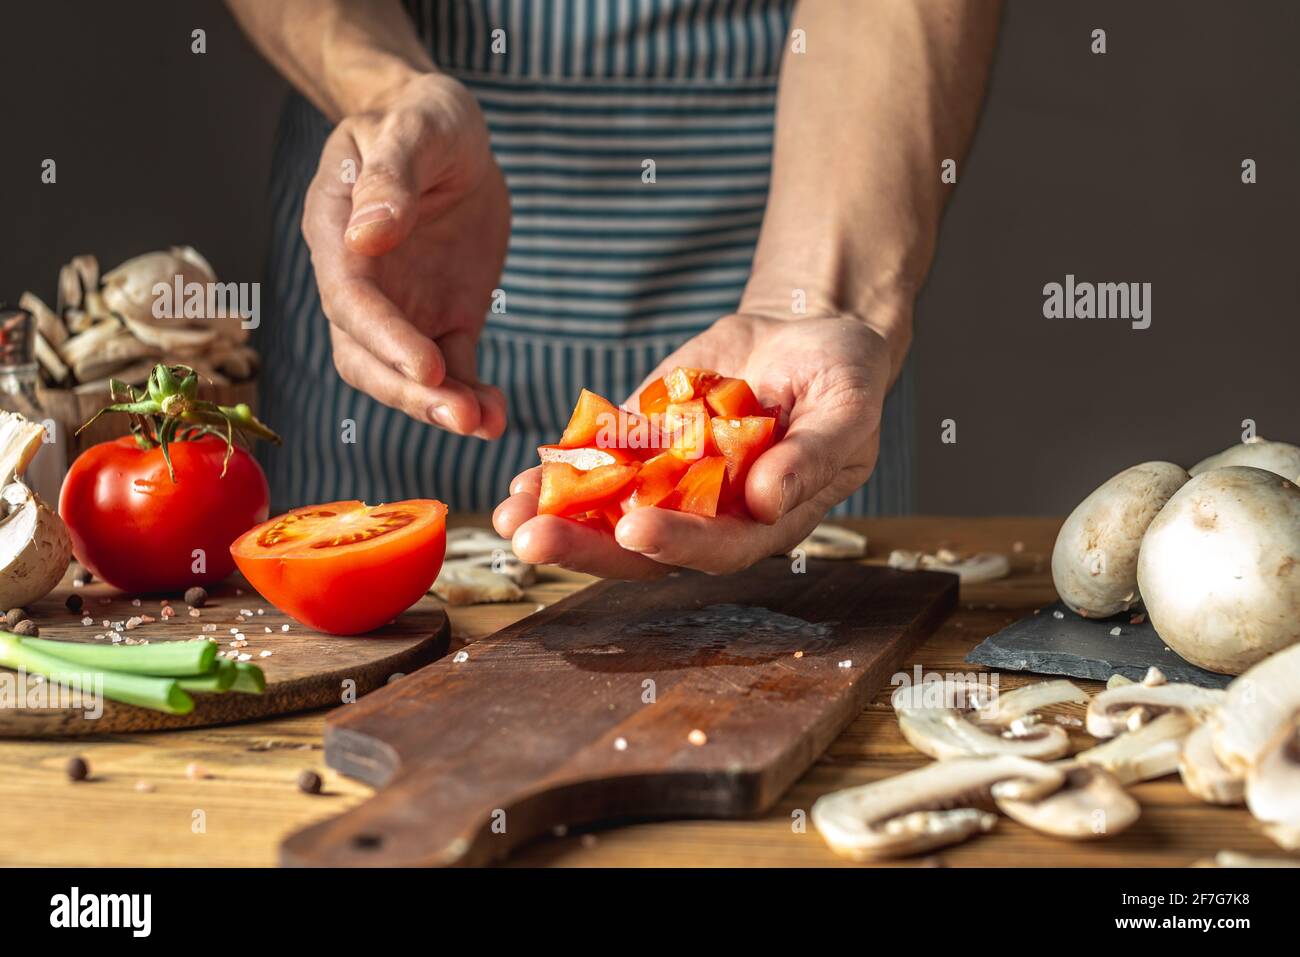 Un chef masculin dans un tablier bleu coupe des tomates fraîches appétissantes avec un couteau pour préparer un plat. Concept du processus de cuisson. Banque D'Images